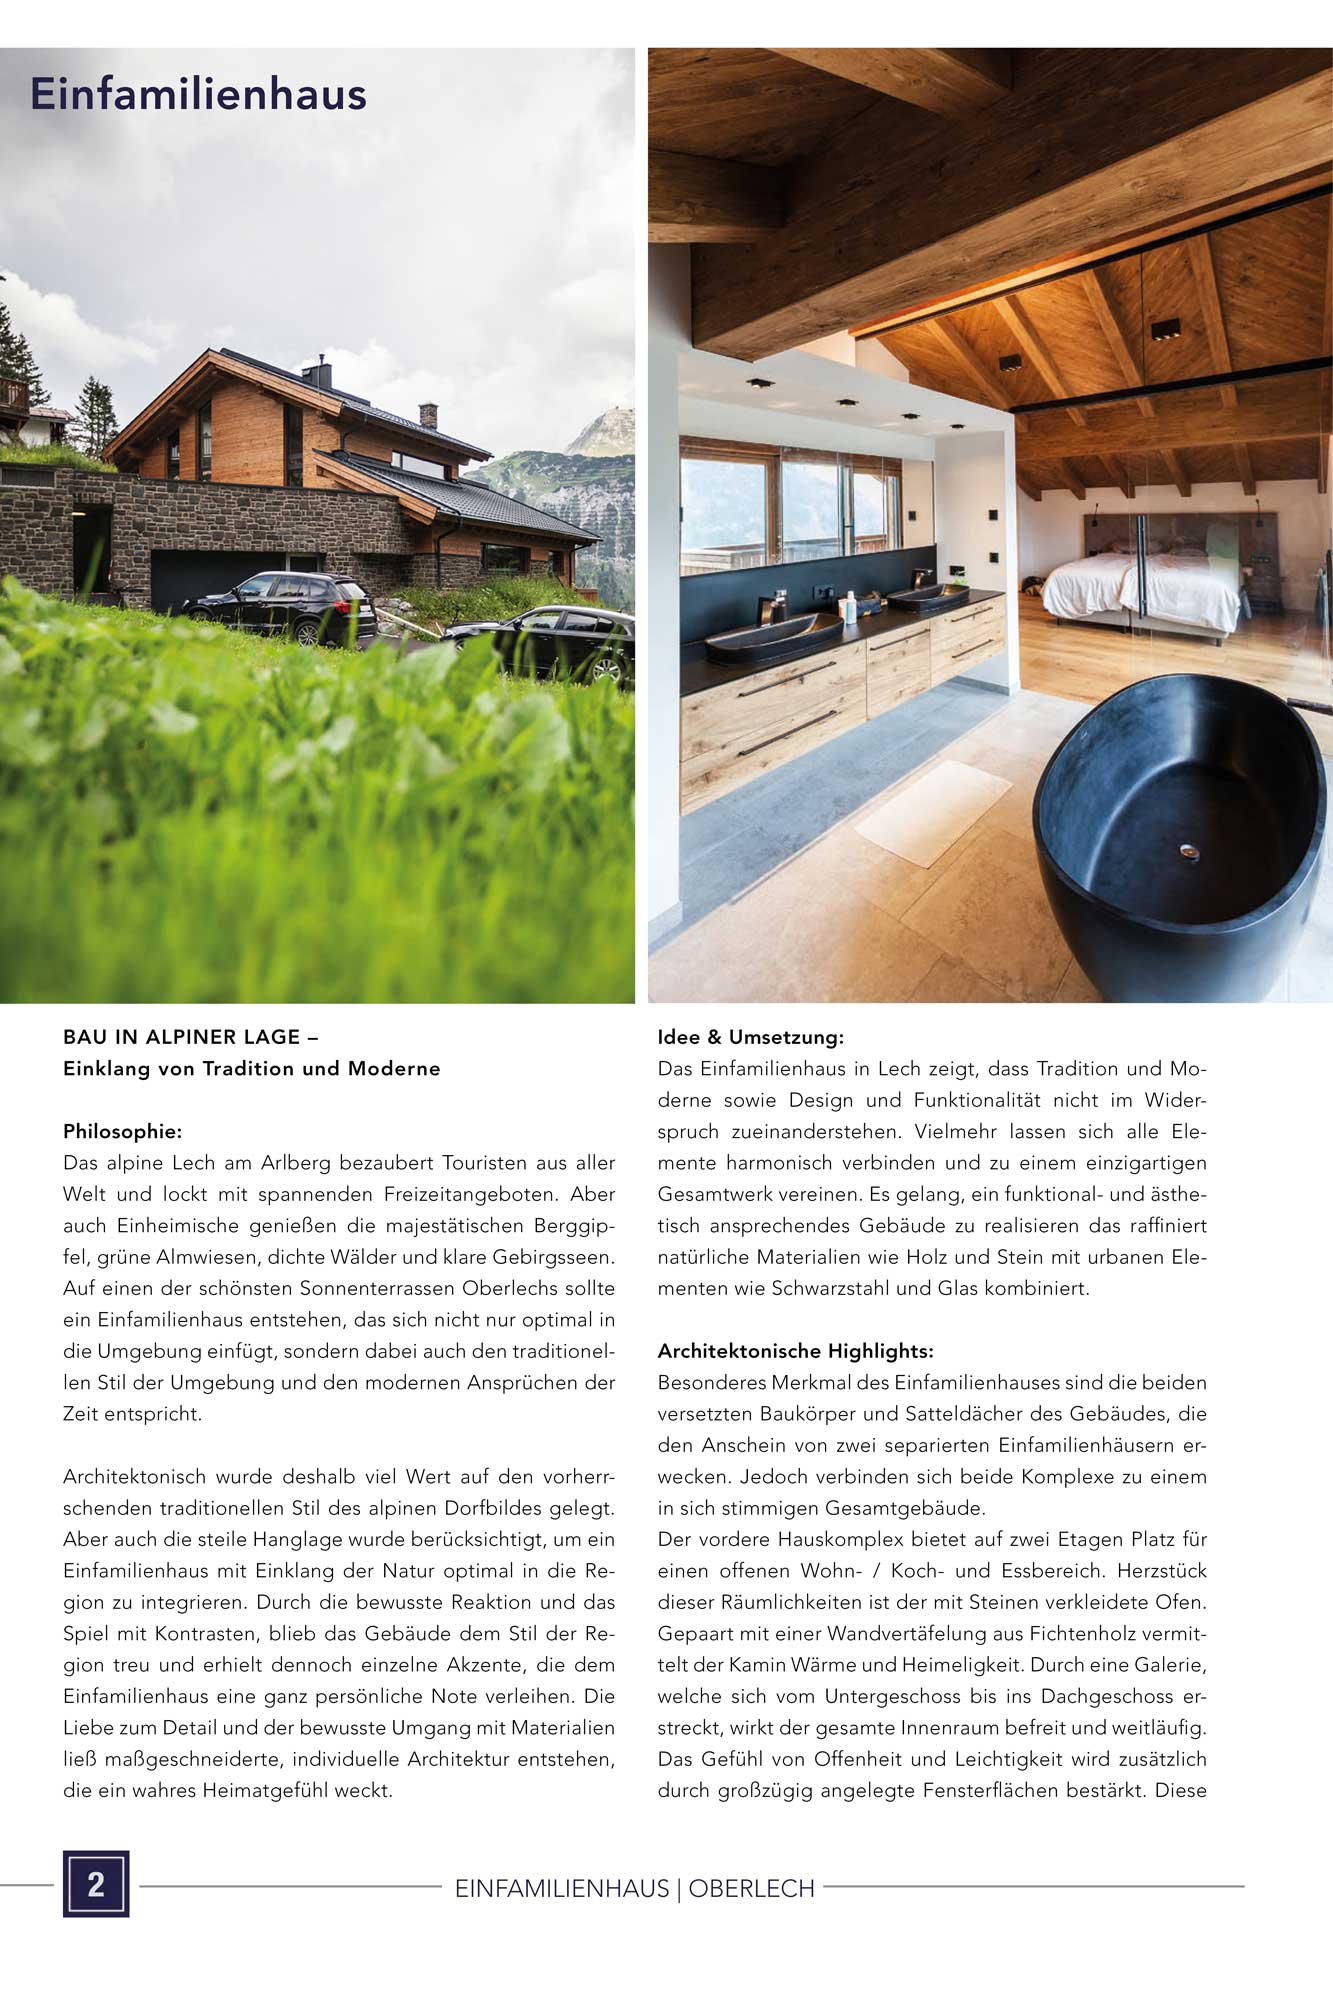 Pressebeitrag im Architektur Spektrum September 2020 | Haus in Hanglage | Projekt von SNOW, Tirol & Kärnten